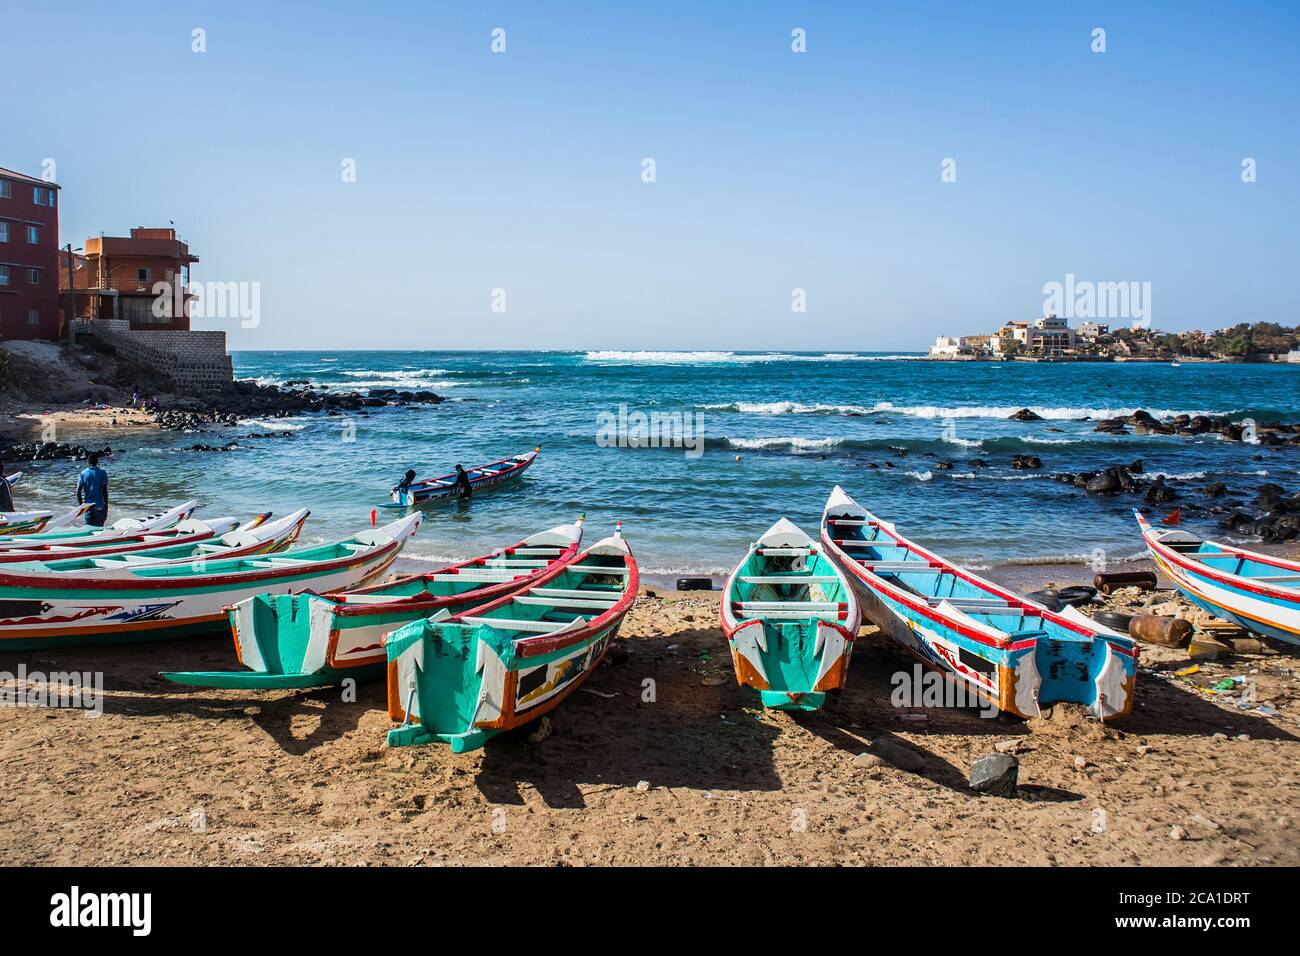 Bateaux de pêche à Ngor Dakar, Sénégal, appelés pirogue ou piragua ou piraga. Bateaux colorés utilisés par les pêcheurs se tenant dans la baie de Ngor par une journée ensoleillée Banque D'Images